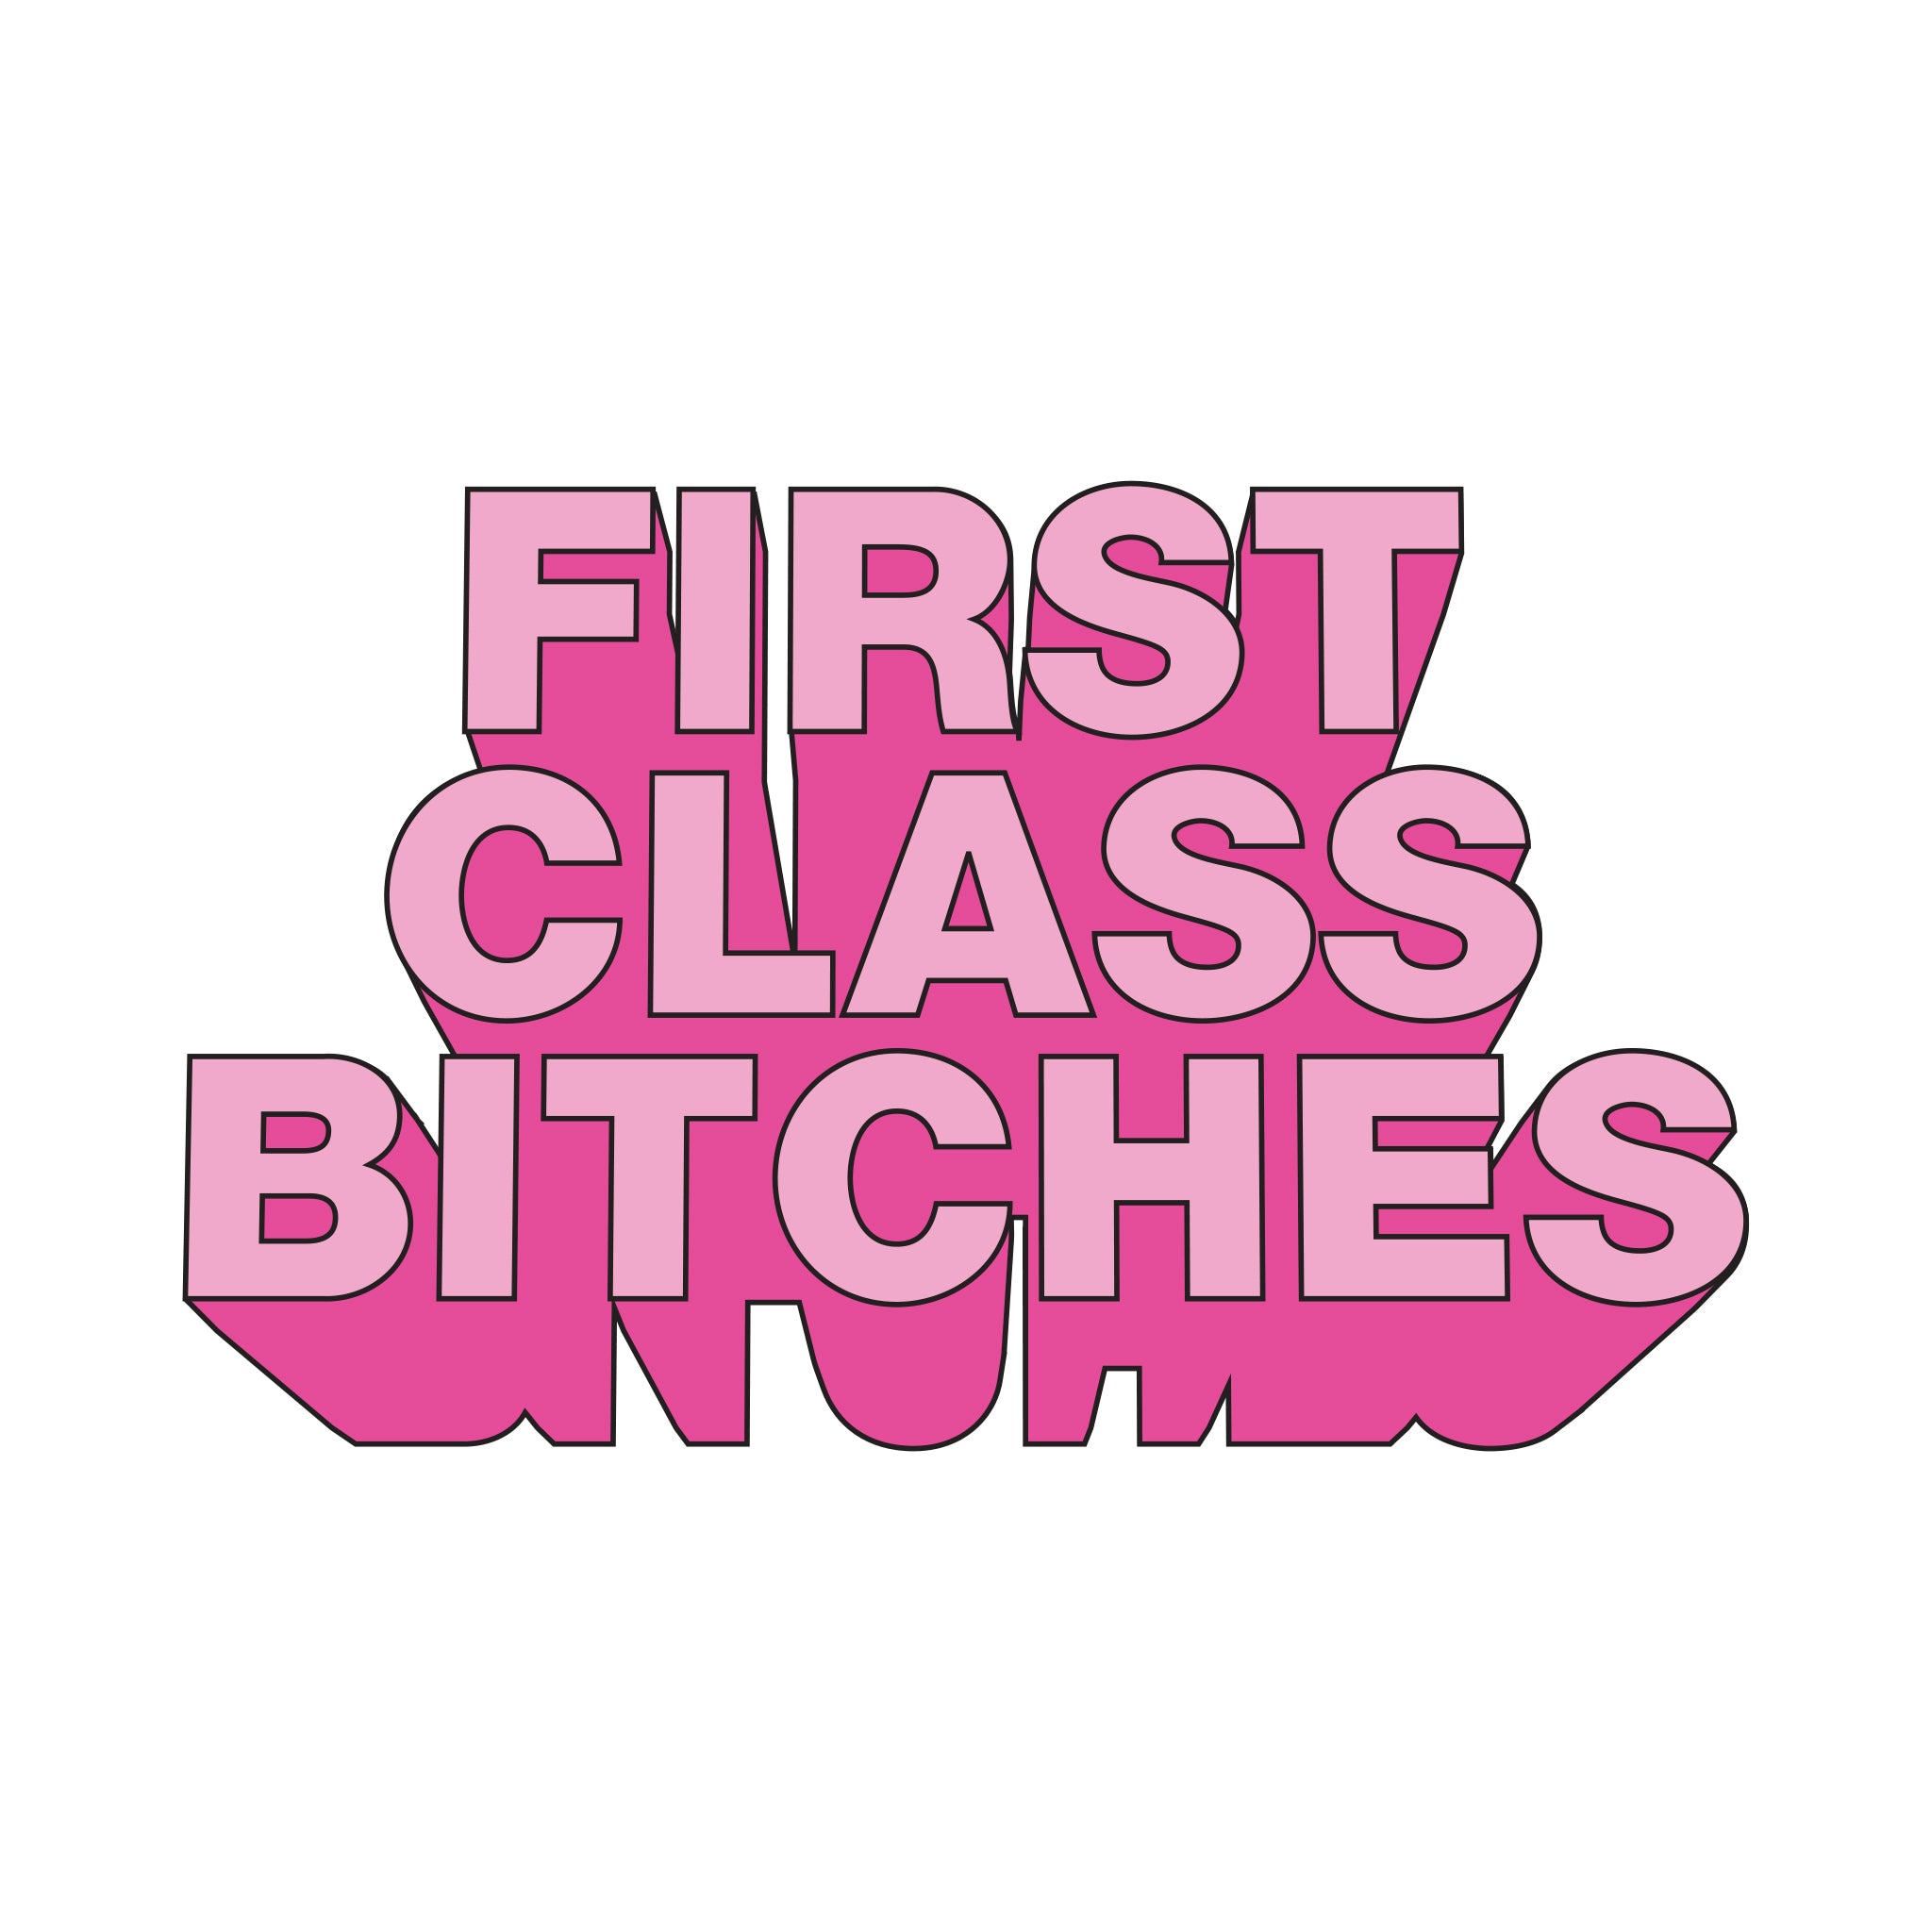 First class bitches